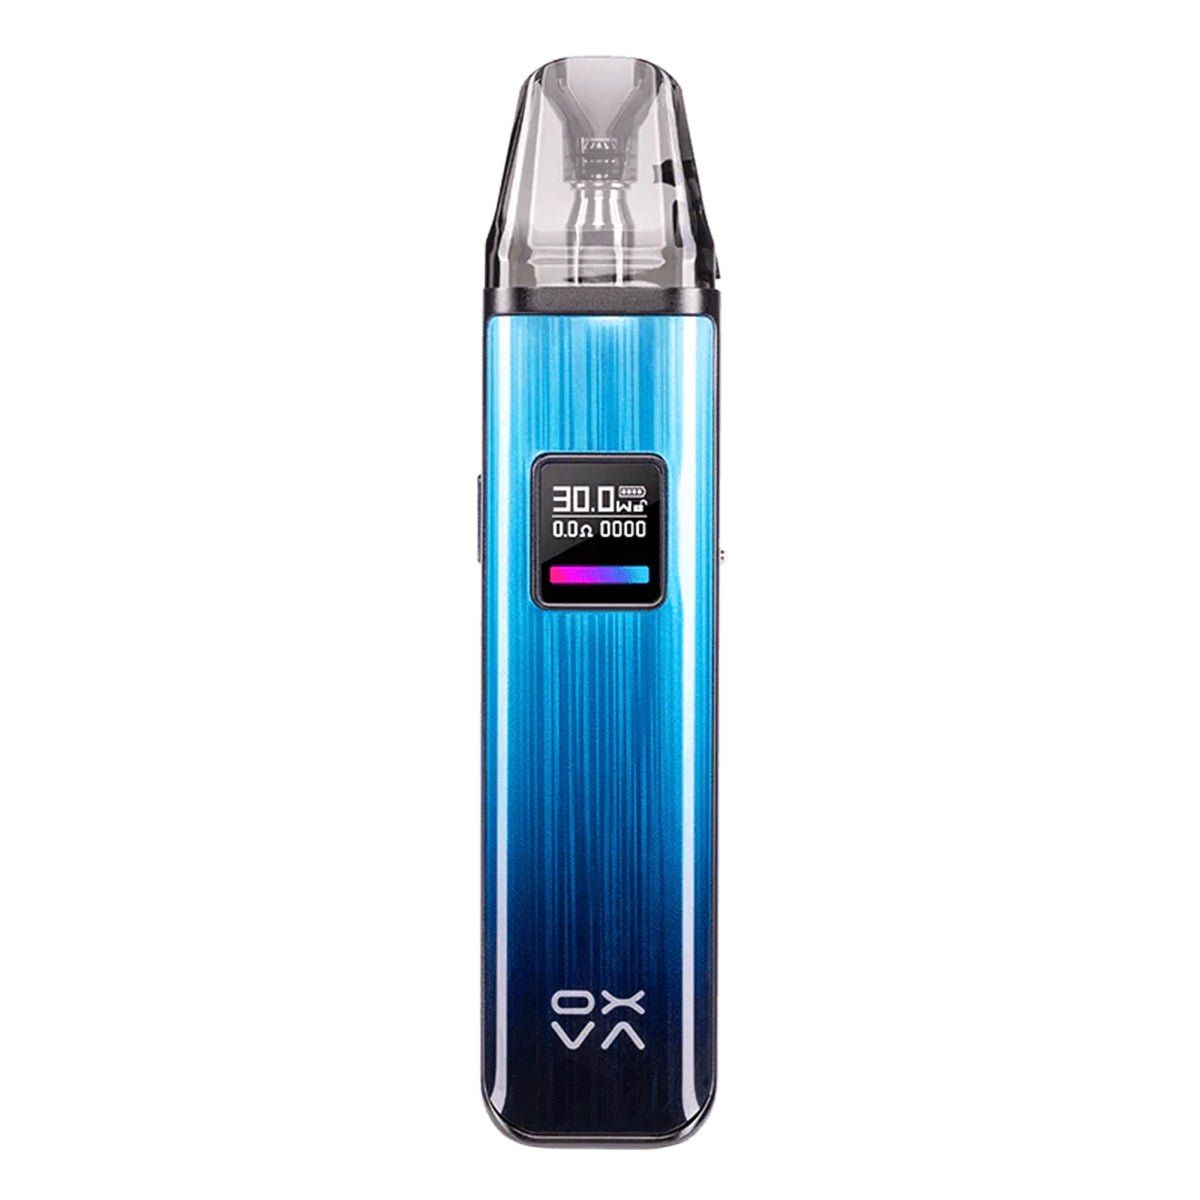 Xlim Pro Vape Pod Kit By Oxva - Prime Vapes UK